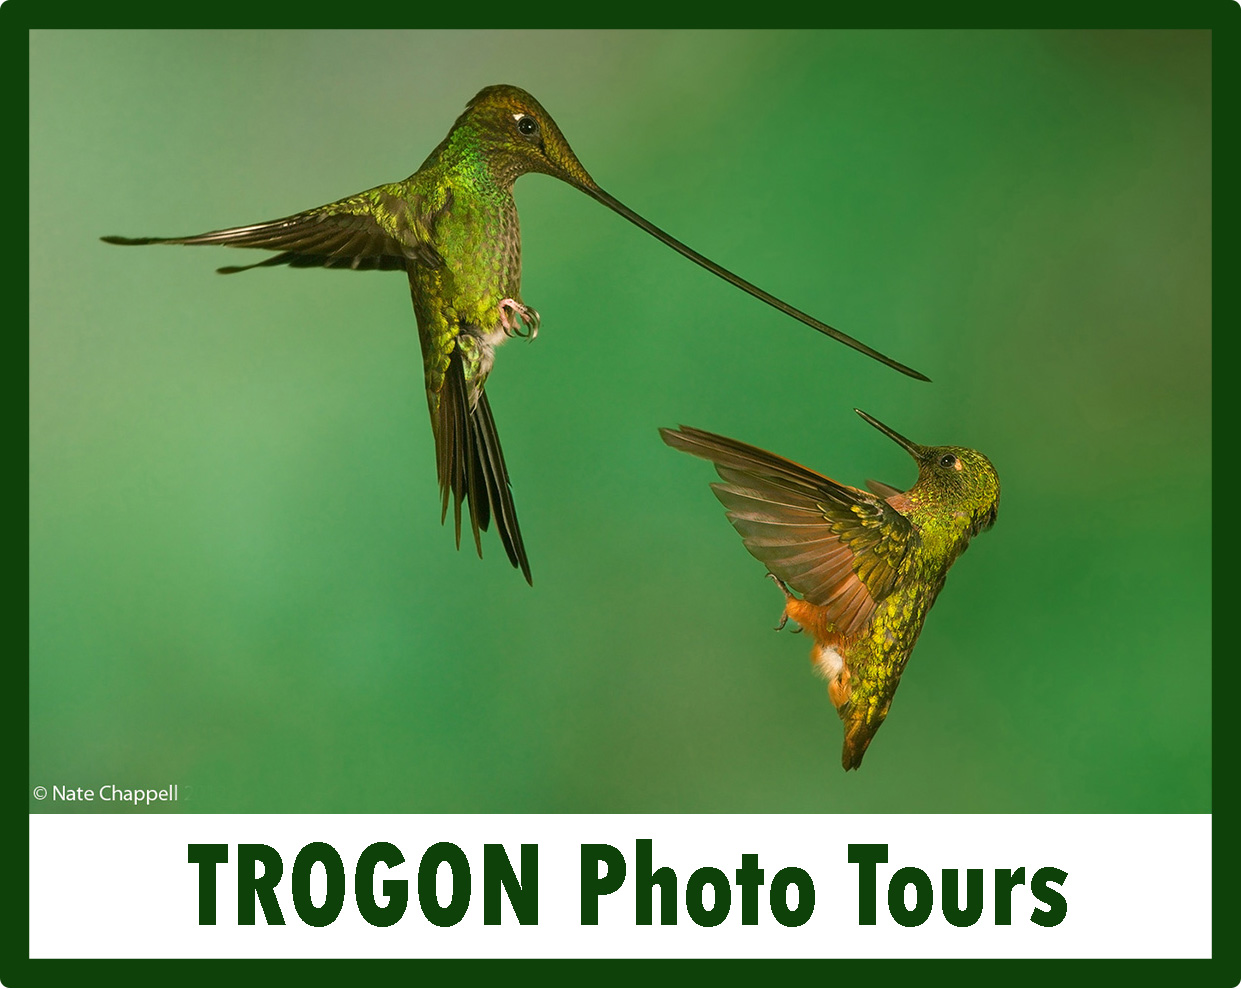 Trogon Photo Tours